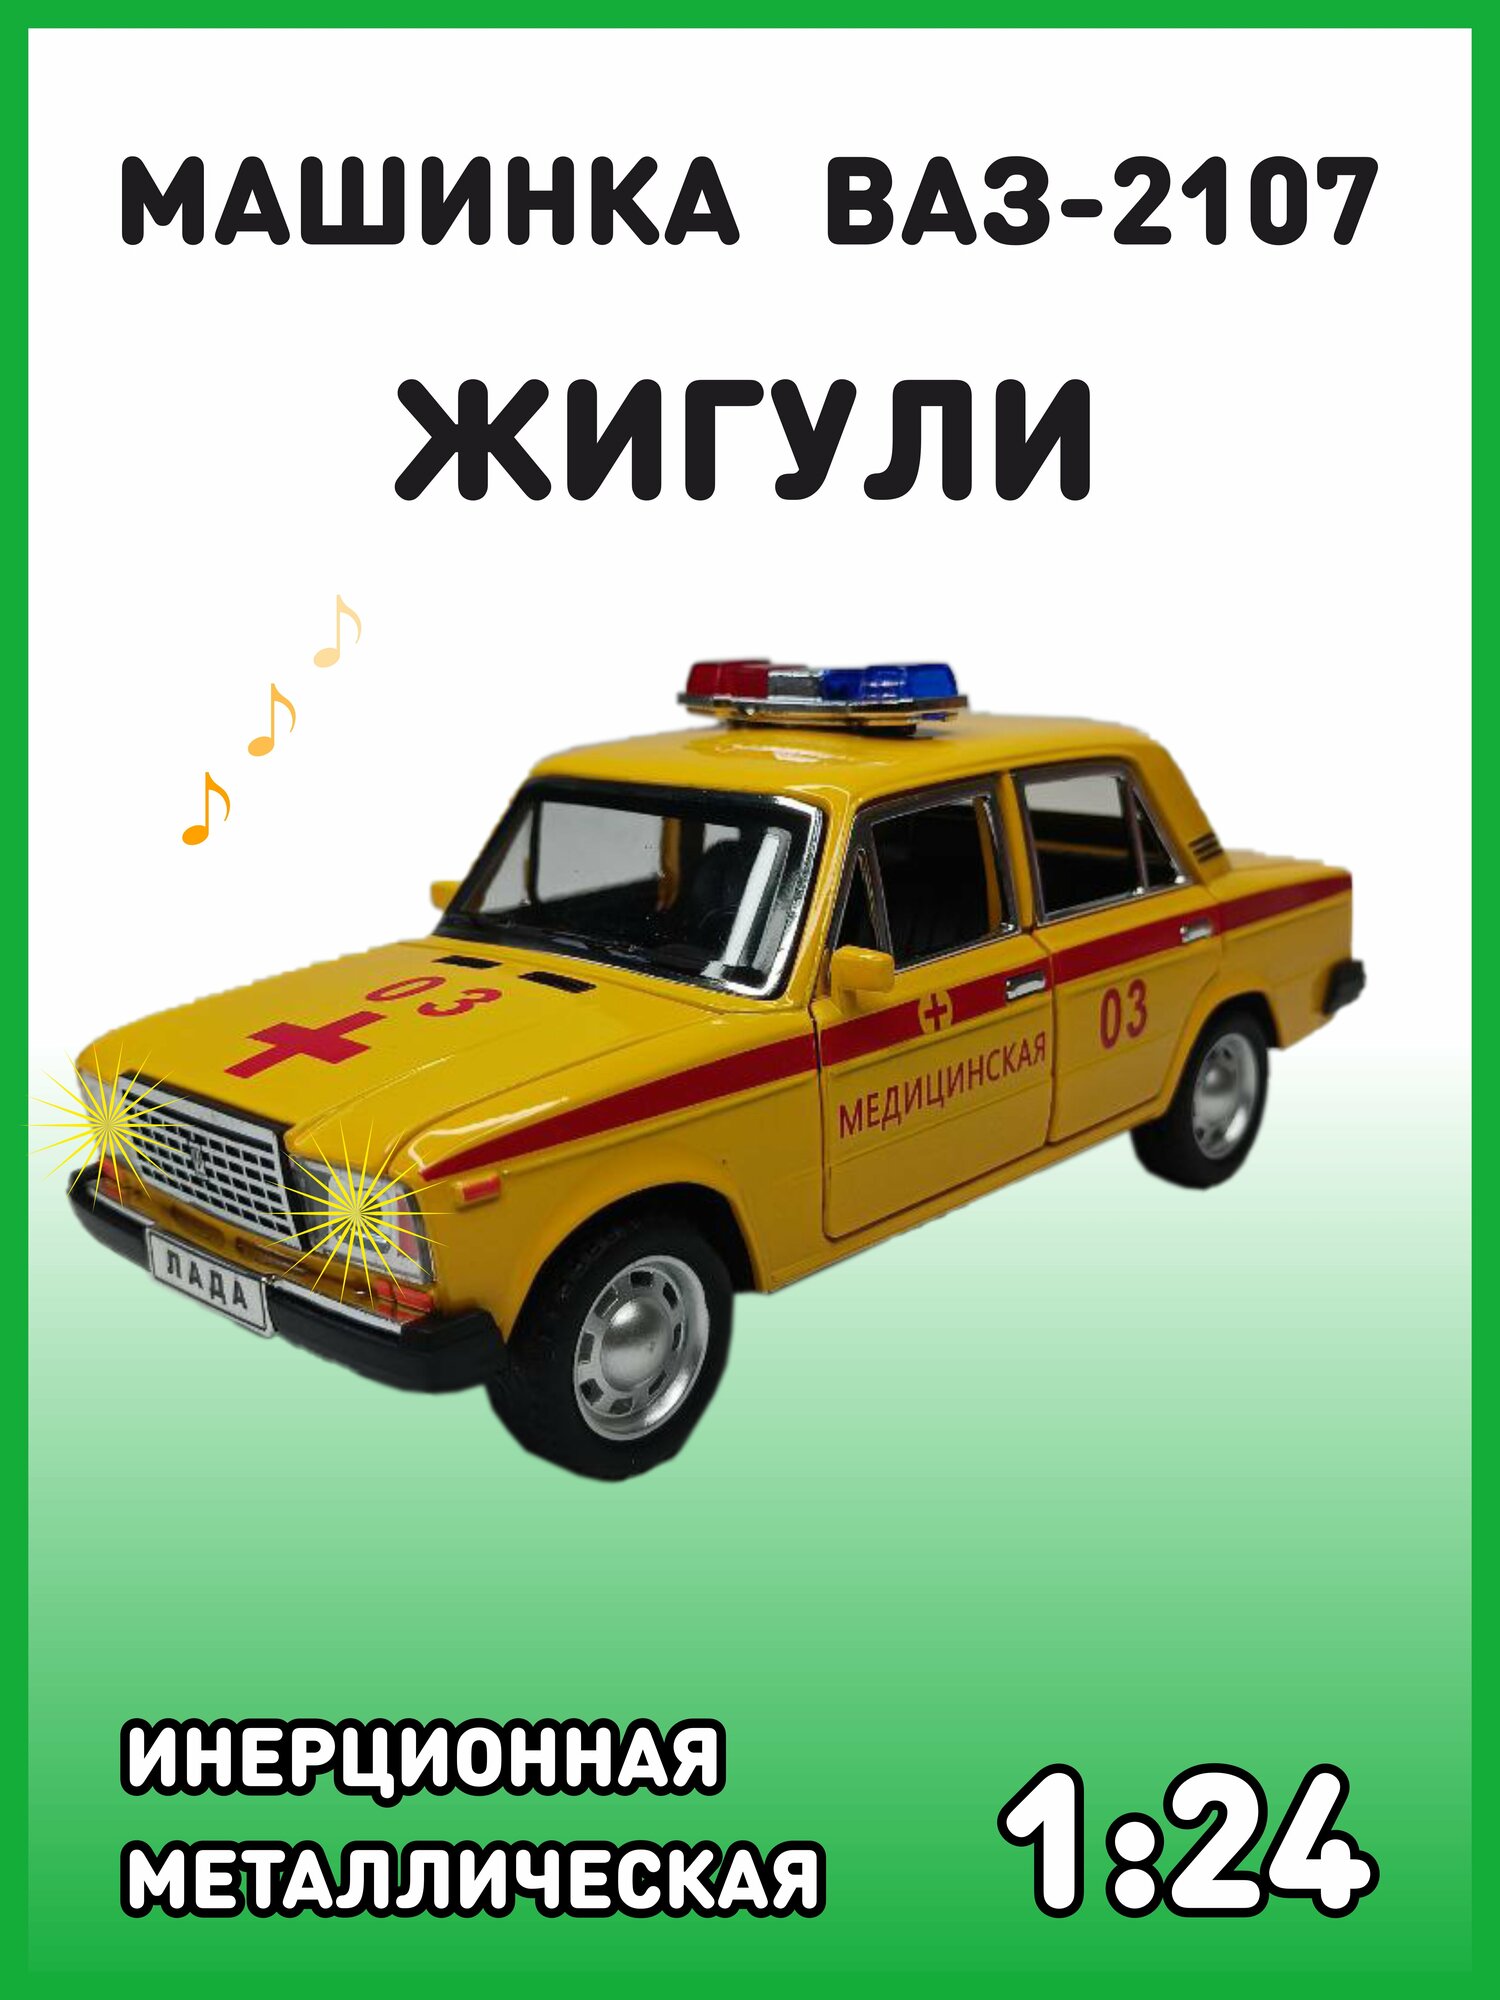 Модель автомобиля Жигули ВАЗ 2107 коллекционная металлическая игрушка масштаб 1:24 желтая медицинская